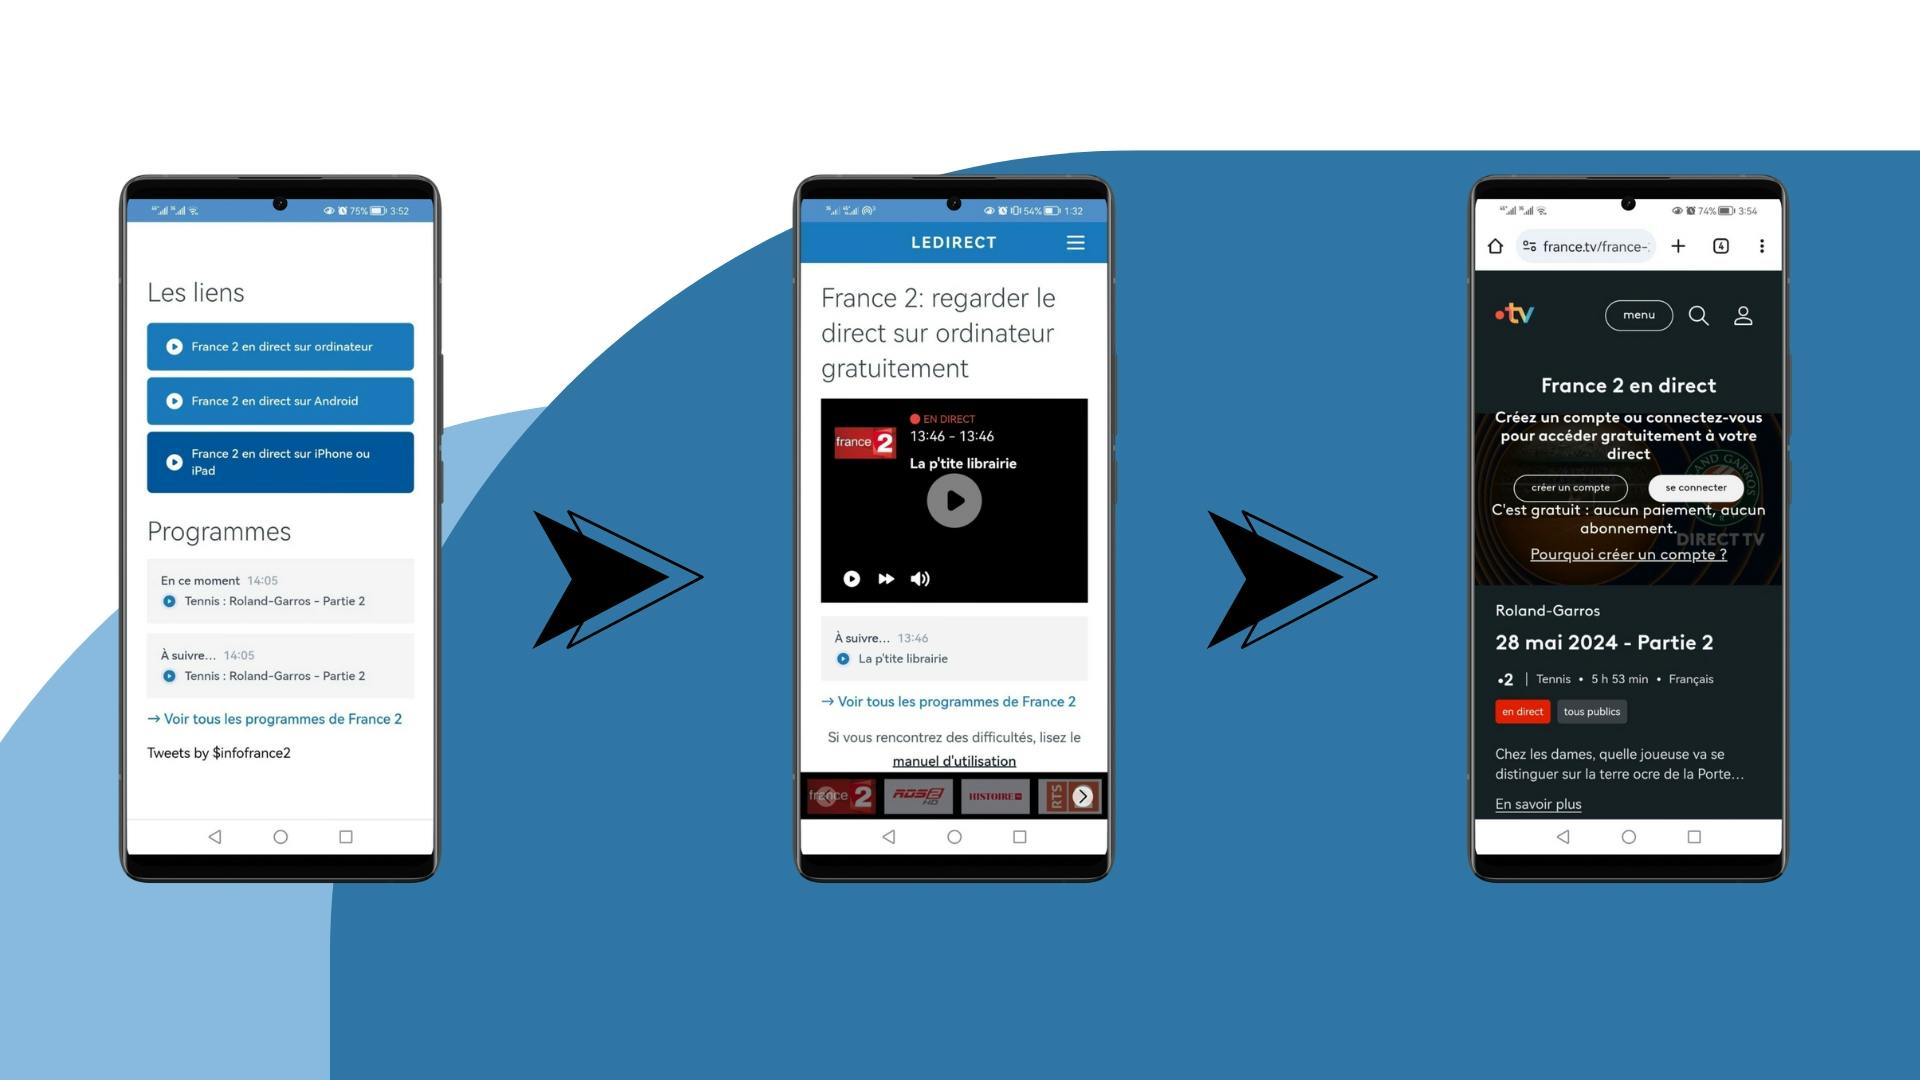 image de 3 écrans d’un smartphone Android qui montrent les étapes à suivre pour regarder France 2 en direct sur mobile depuis le site LeDirect.fr